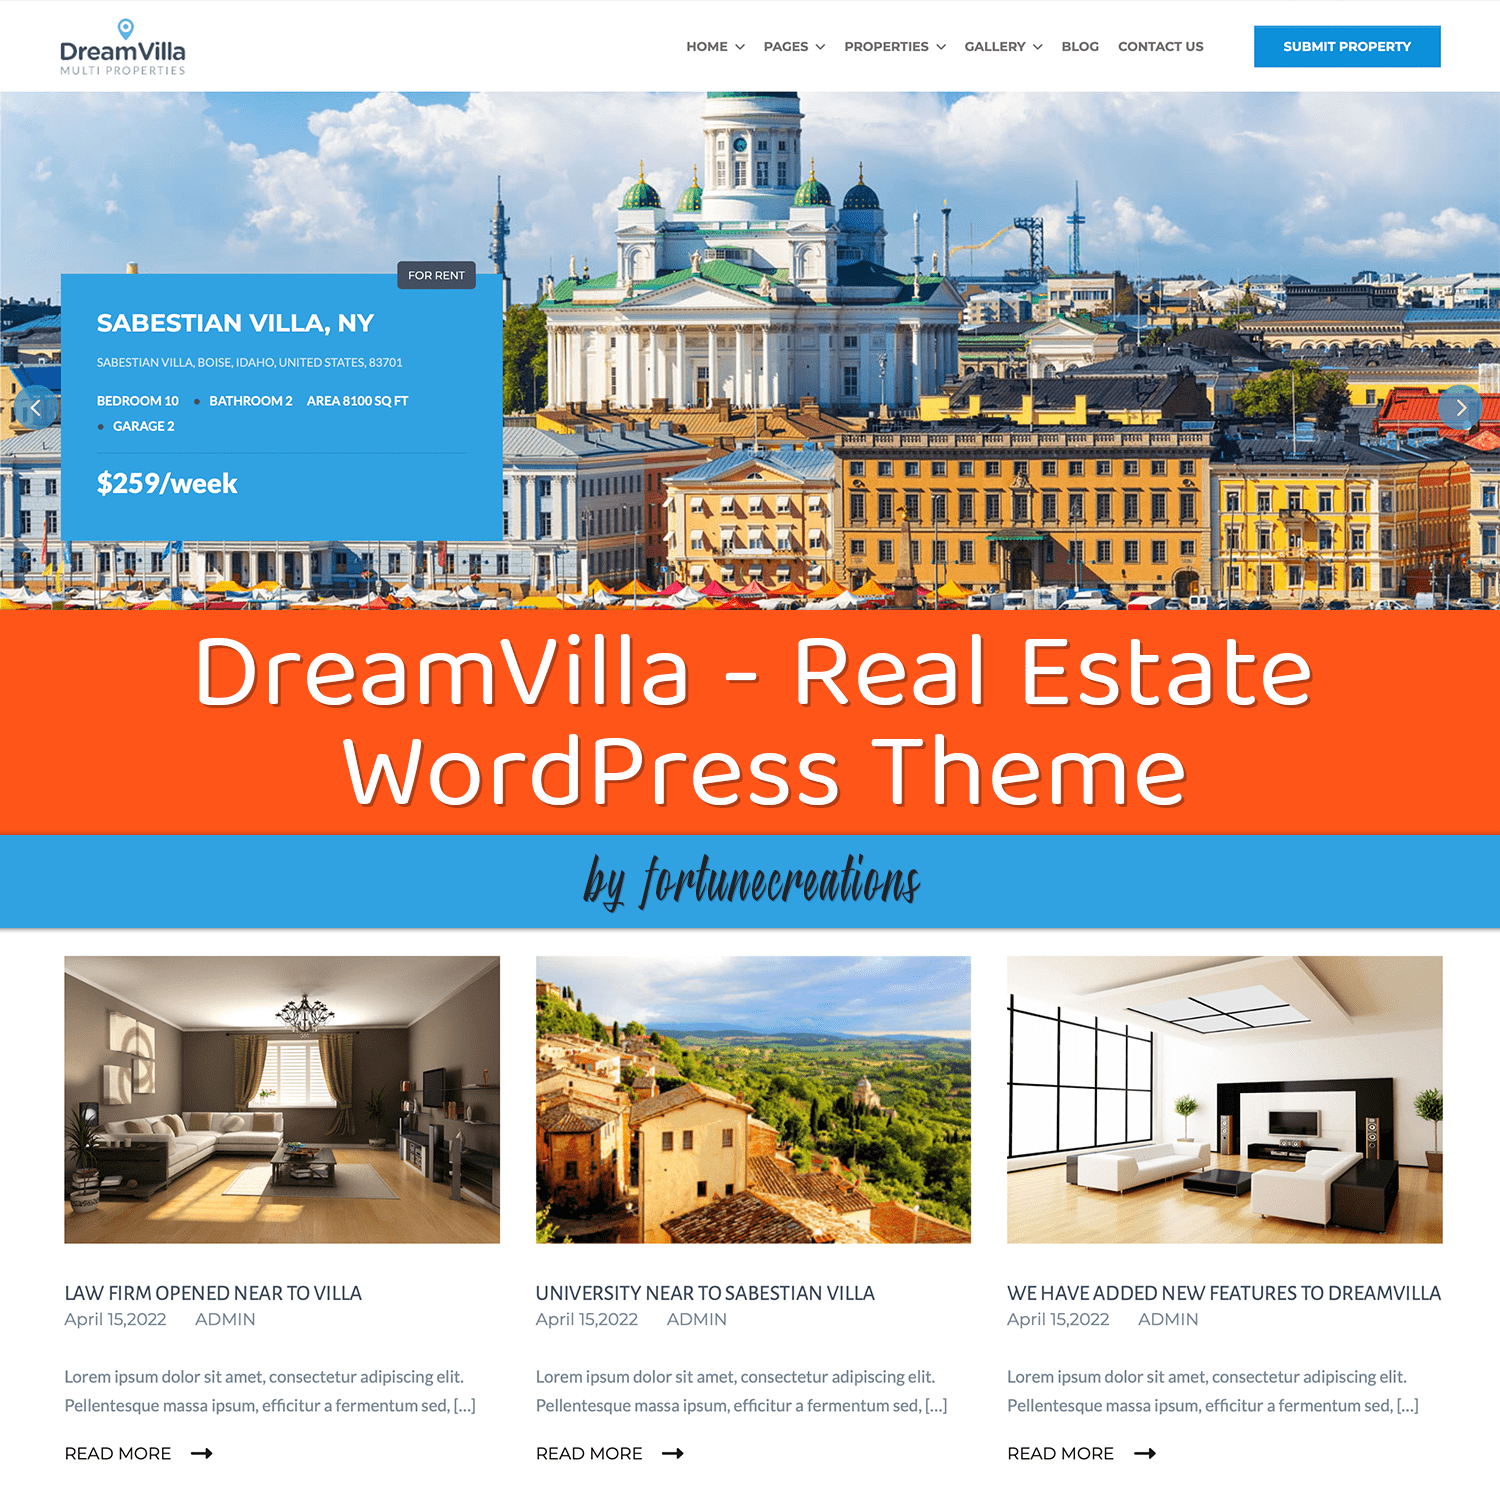 DreamVilla - Real Estate WordPress Theme.